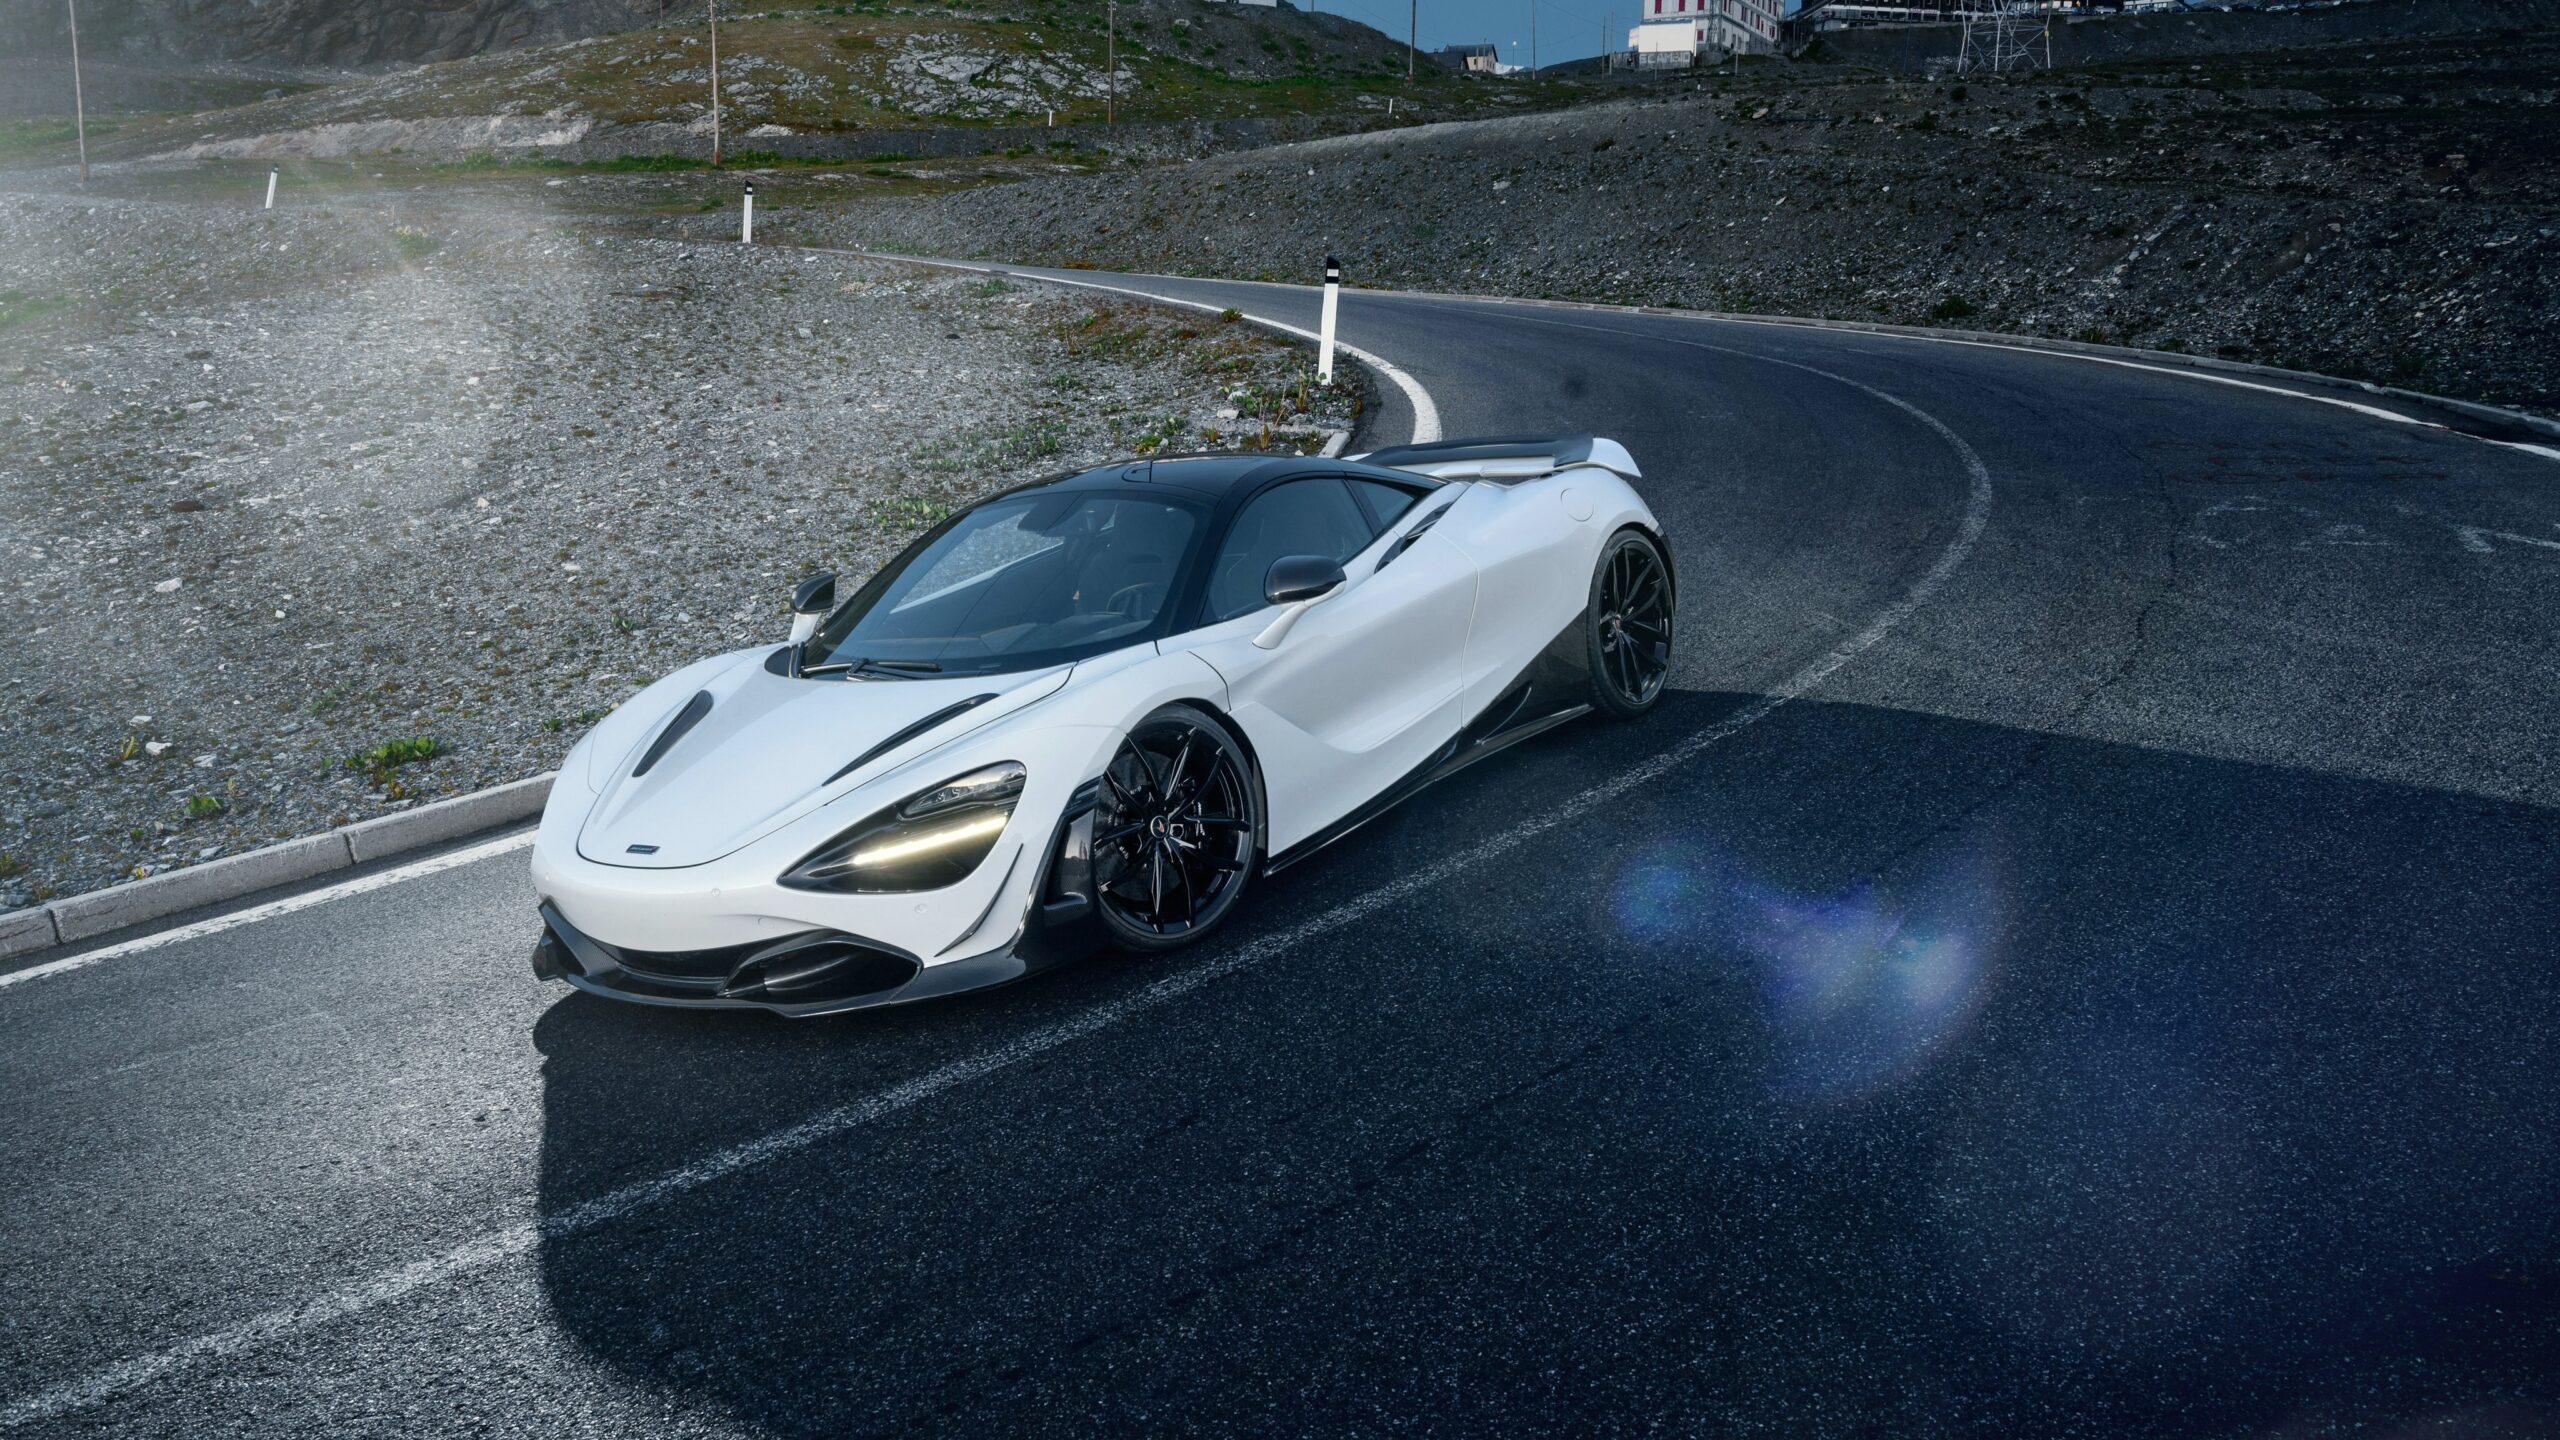 McLaren 720S, Stunning wallpapers, Exquisite design, Supercar, 2560x1440 HD Desktop